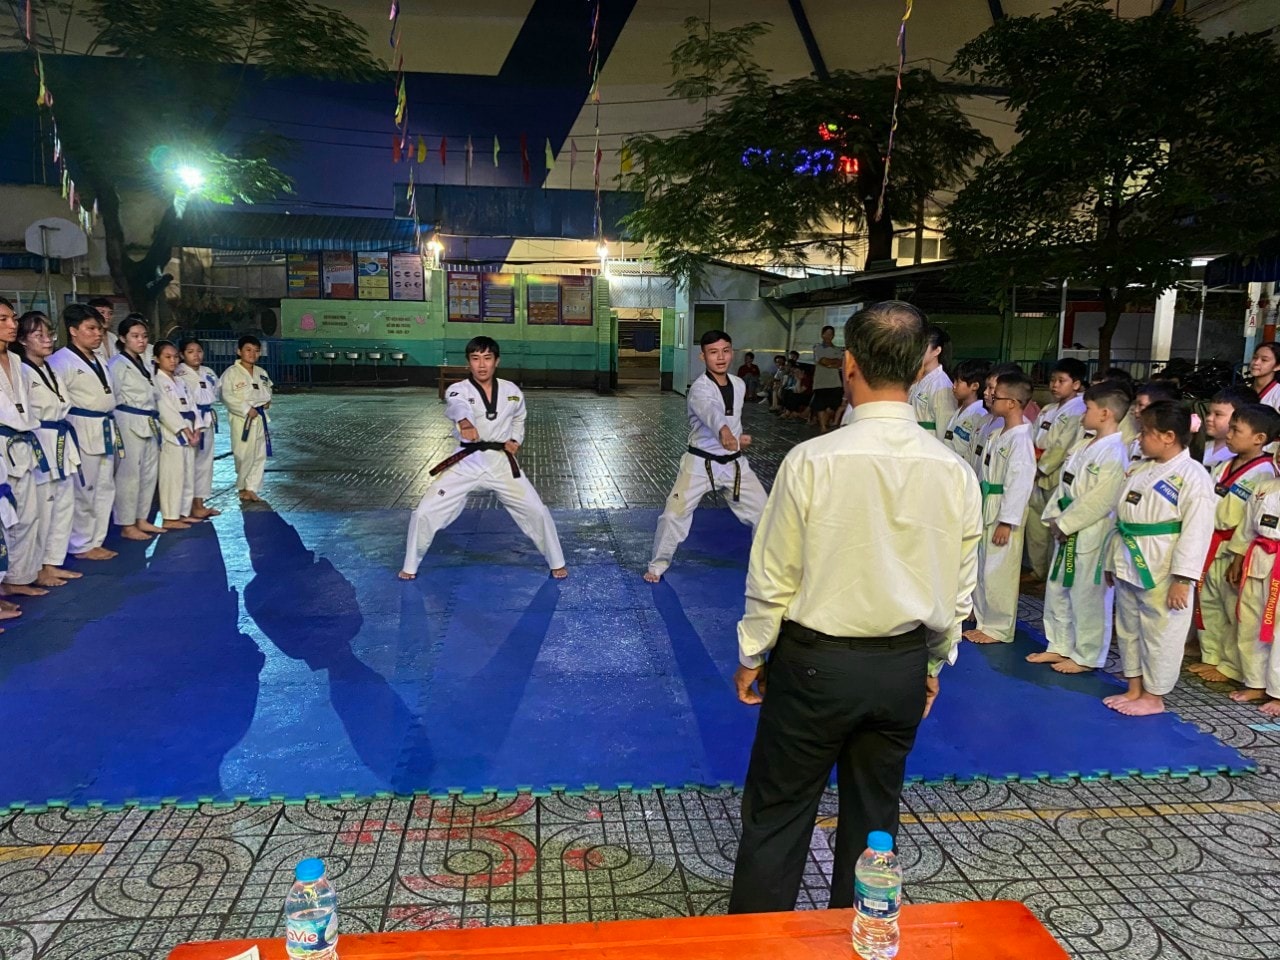 CLB Taekwondo Bạch Hổ Bình Tân